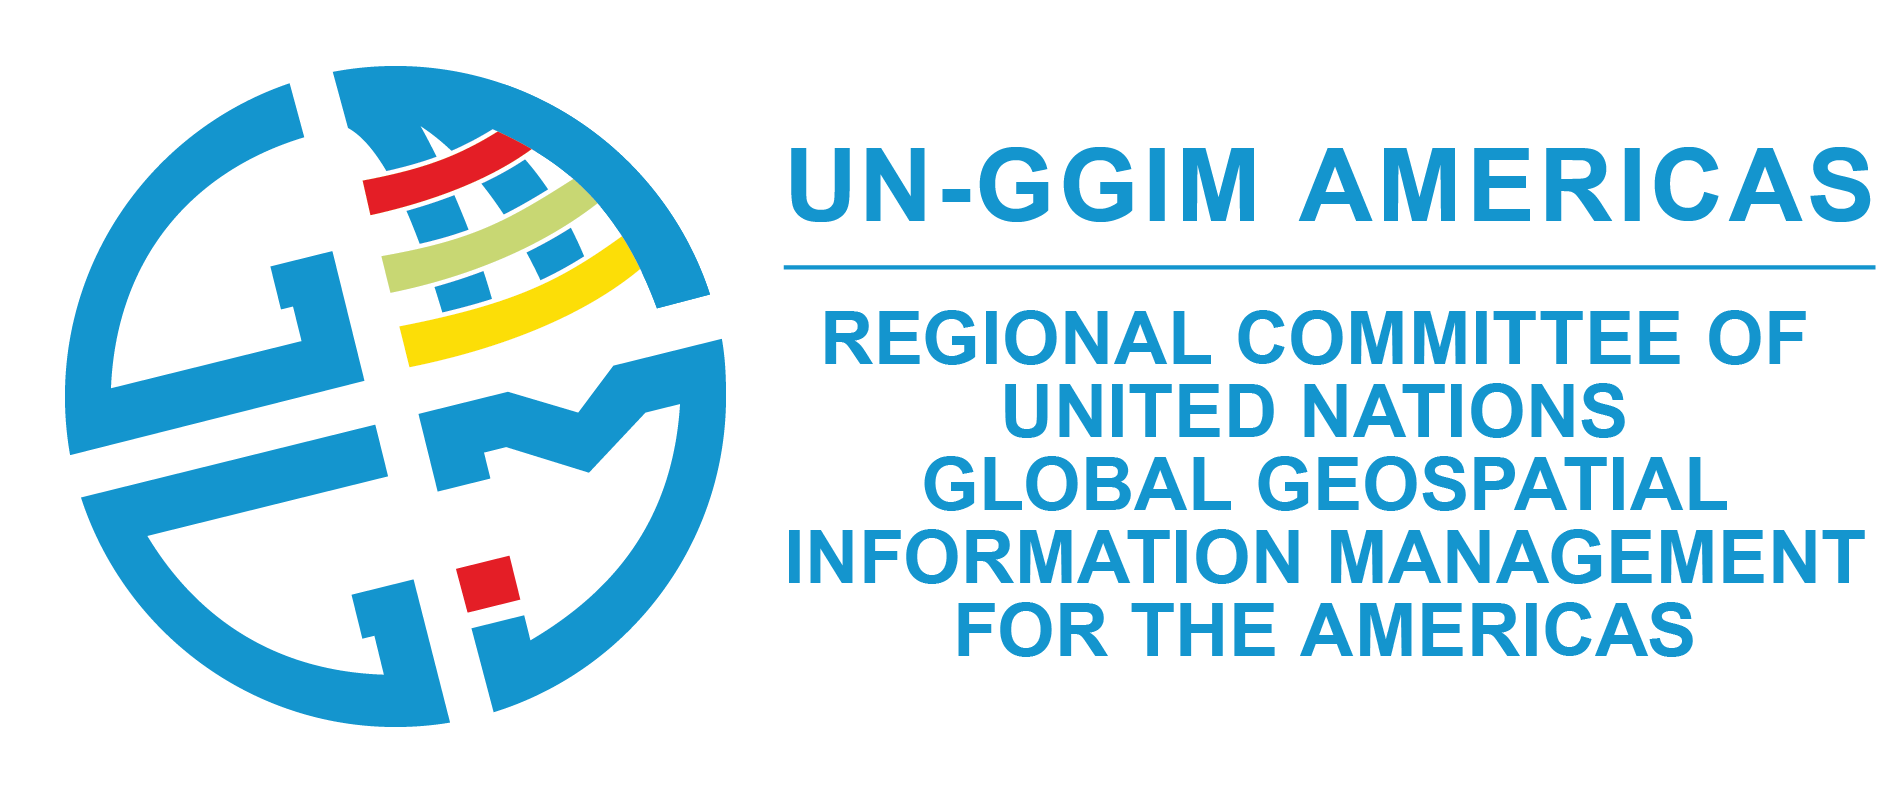 UN-GGIM Americas